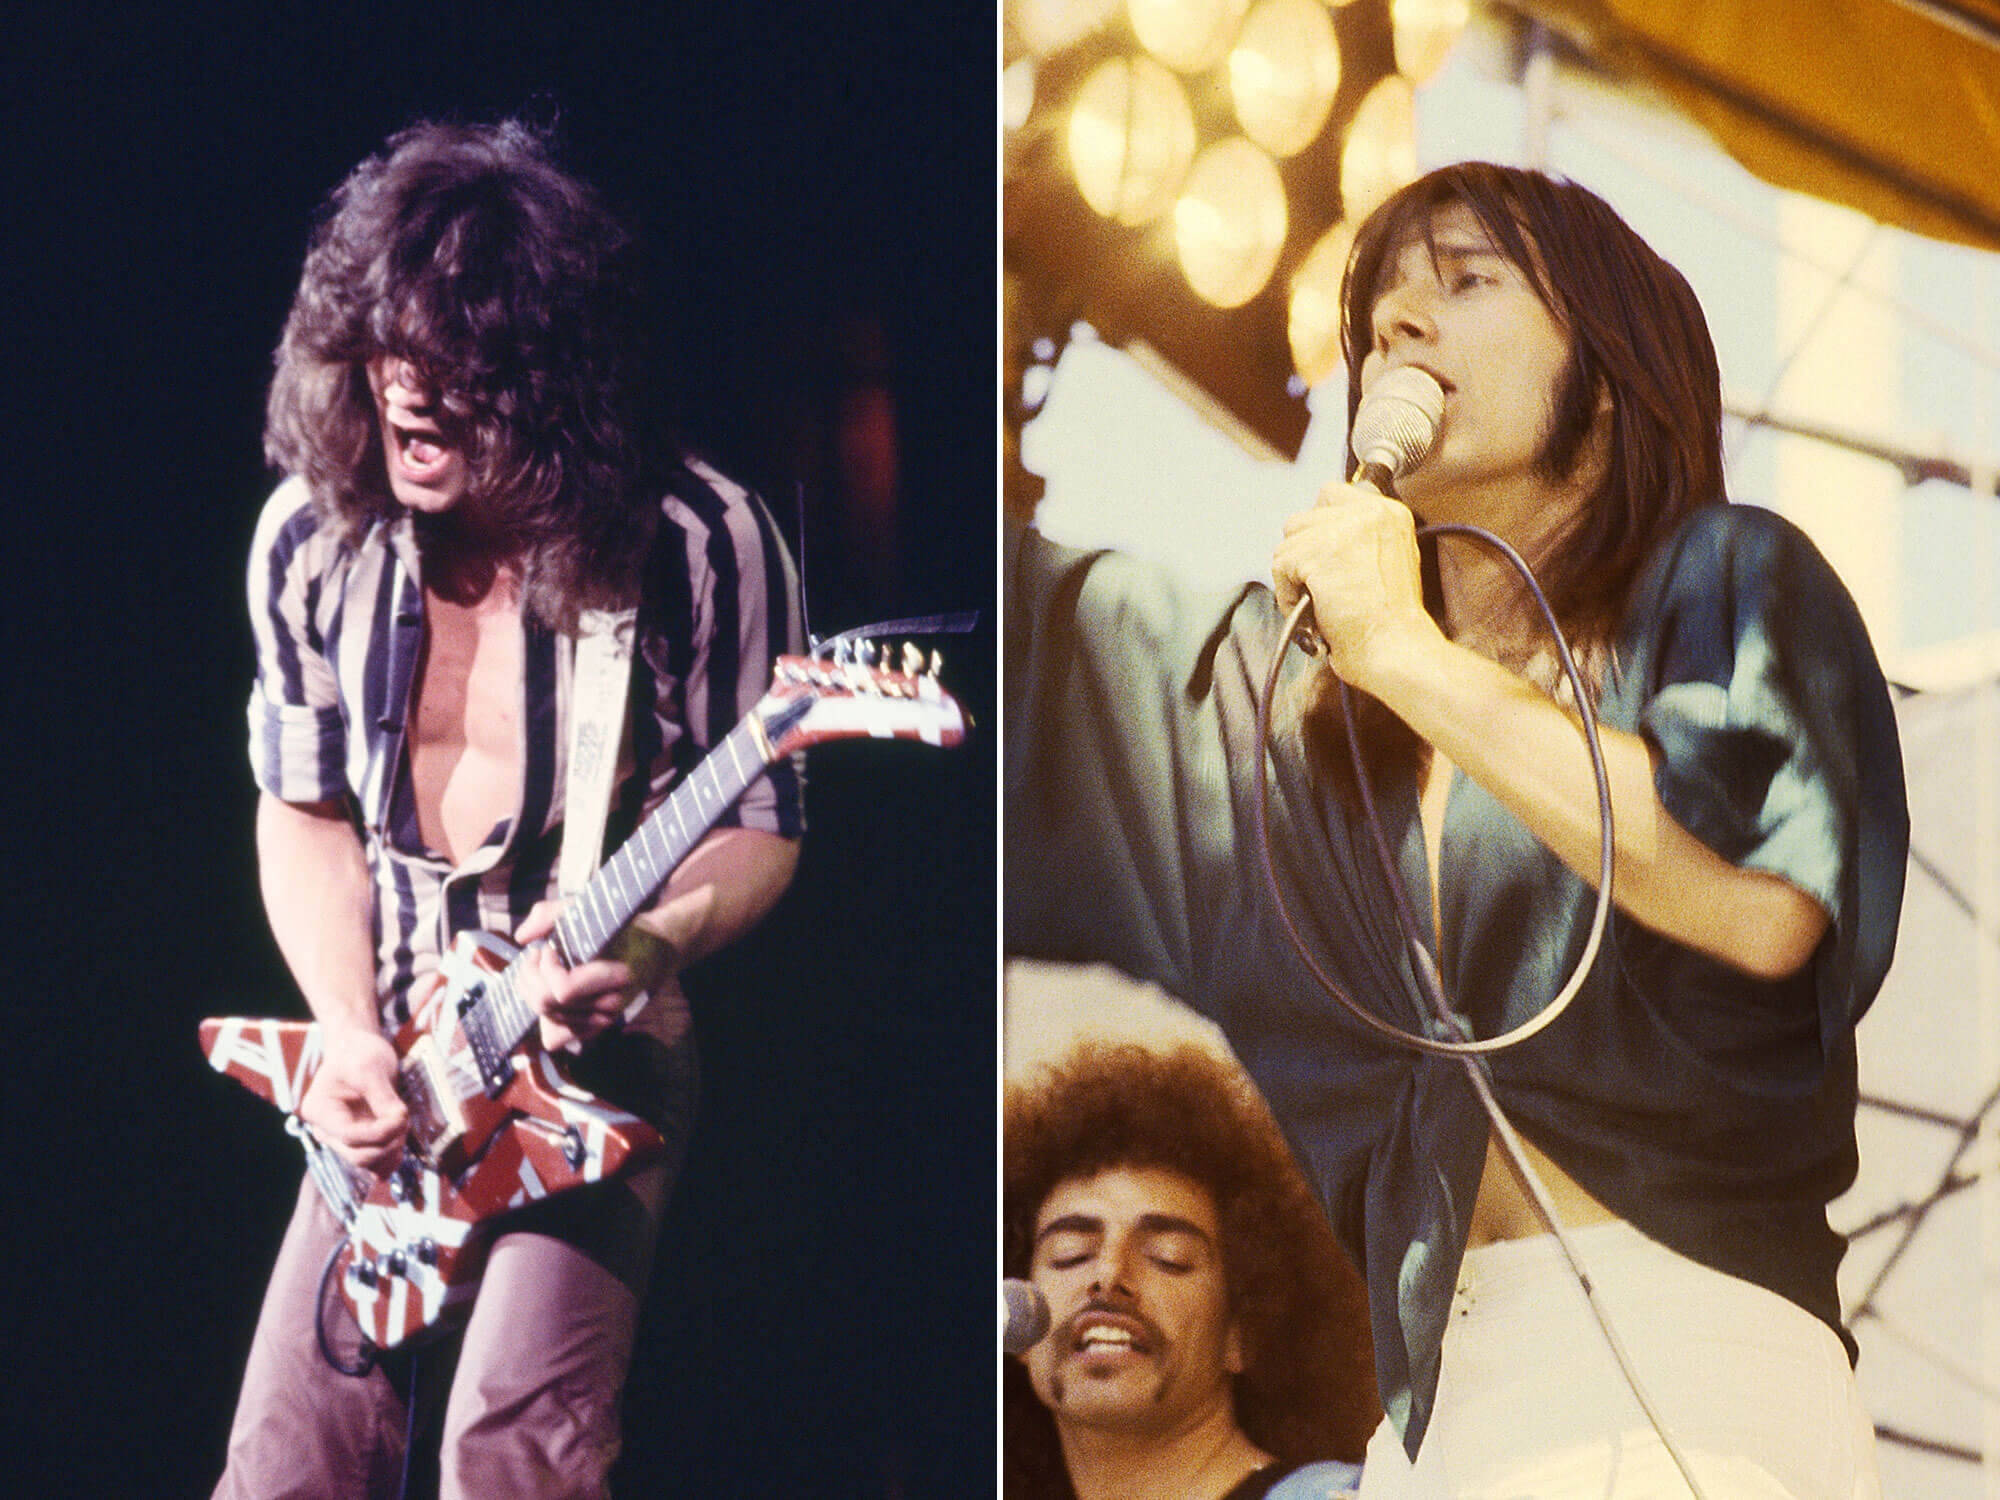 [L-R] Eddie Van Halen and Steve Perry